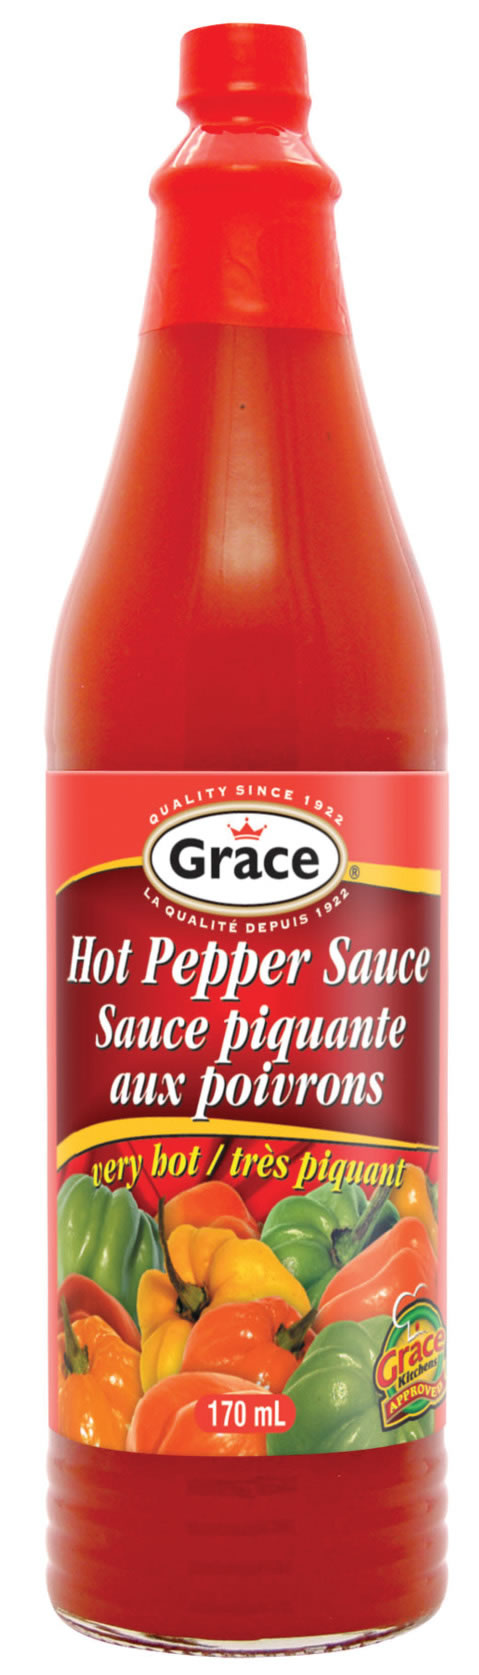 Pepper sauce. Hot Pepper Sauce. Ghost Pepper соус. Capsicum Sauce. Hot&Spicy Pepper Sauce.